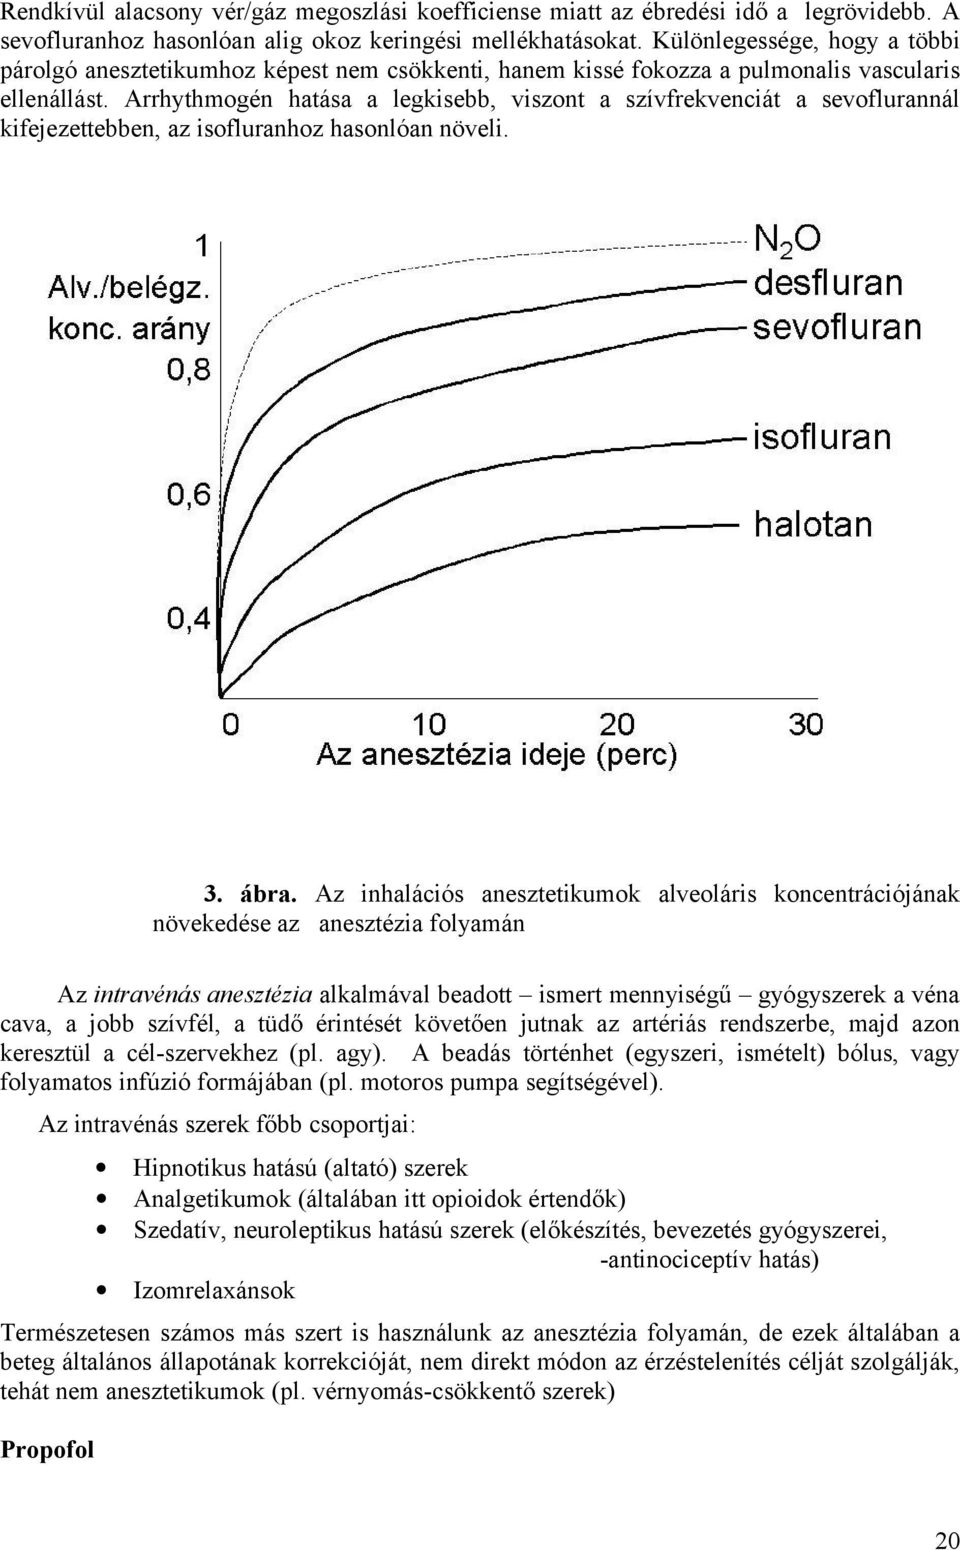 Arrhythmogén hatása a legkisebb, viszont a szívfrekvenciát a sevoflurannál kifejezettebben, az isofluranhoz hasonlóan növeli. 3. ábra.